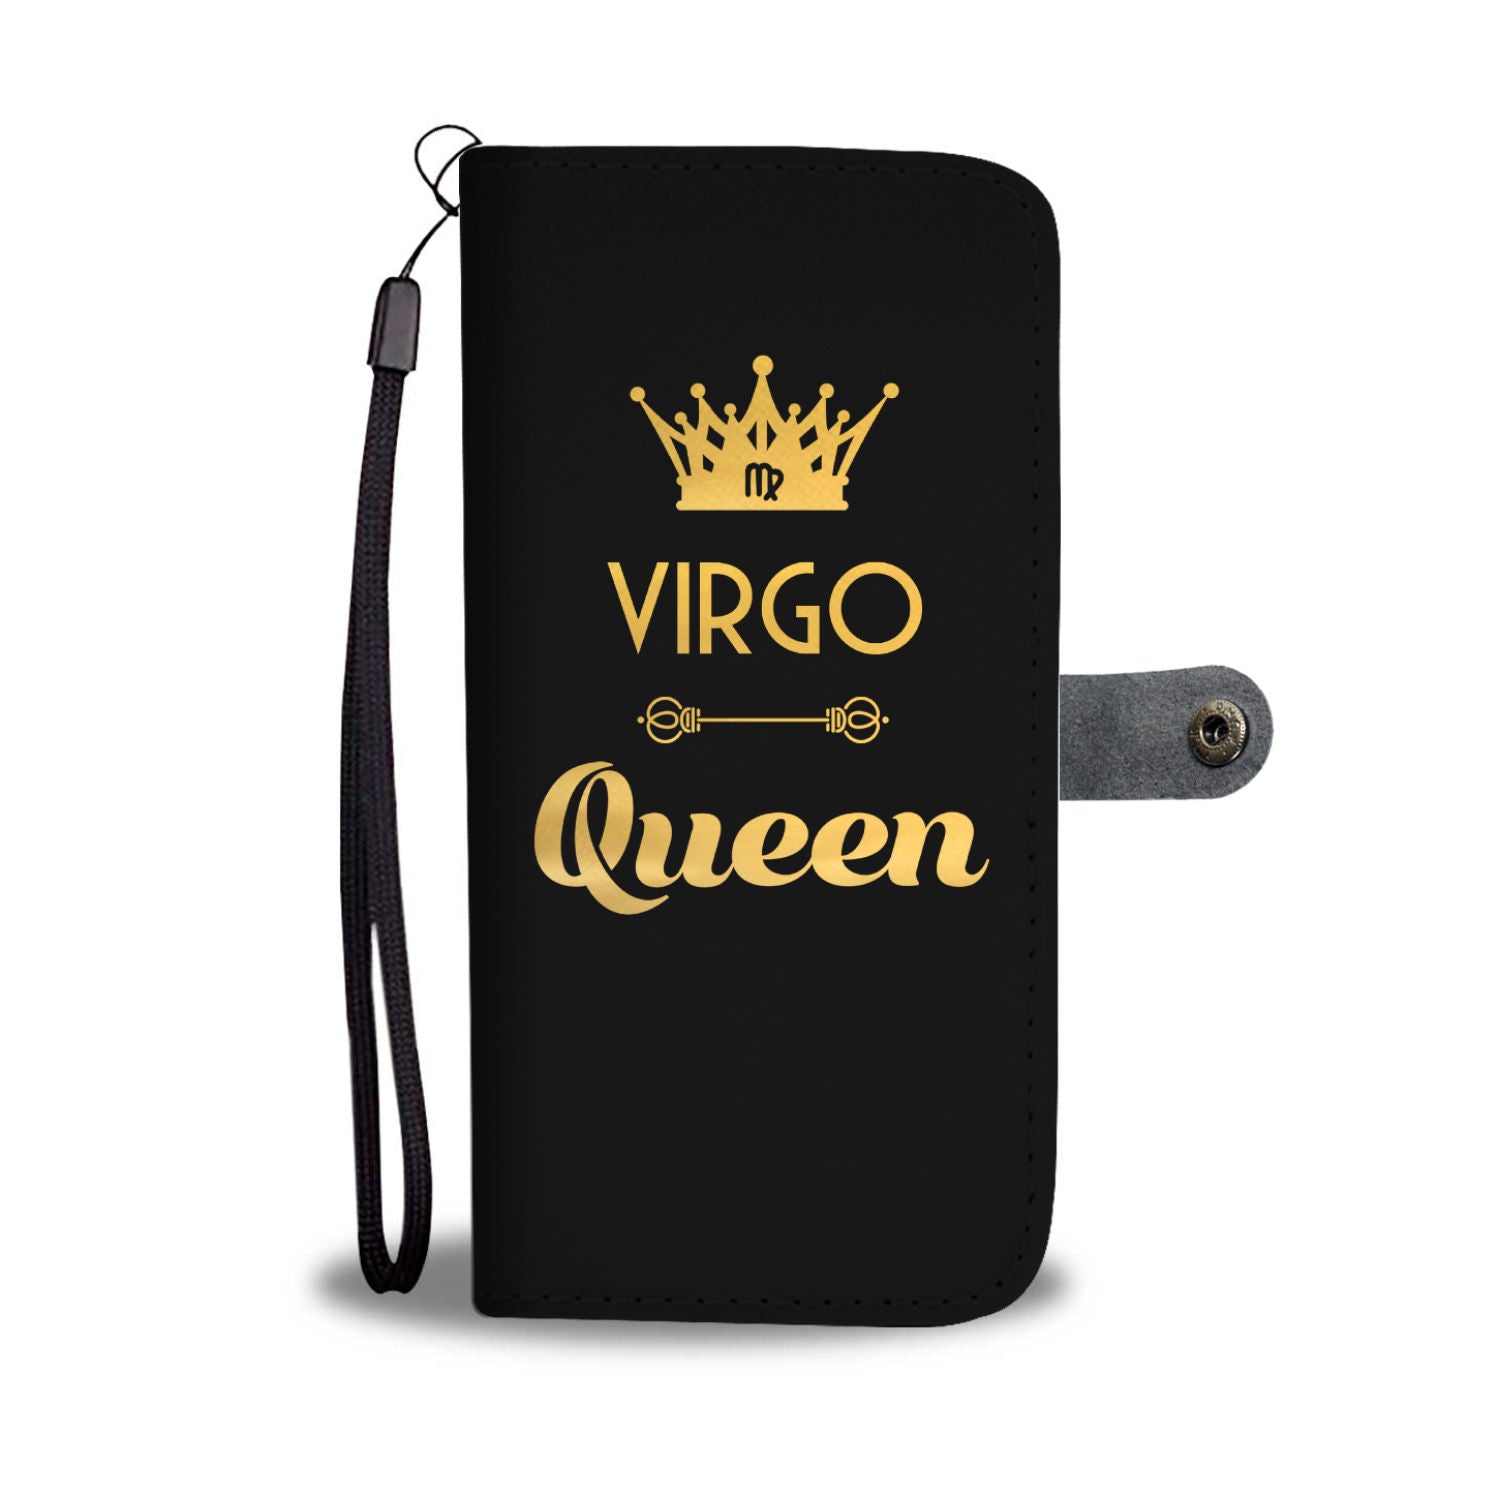 Virgo Queen Phone Wallet